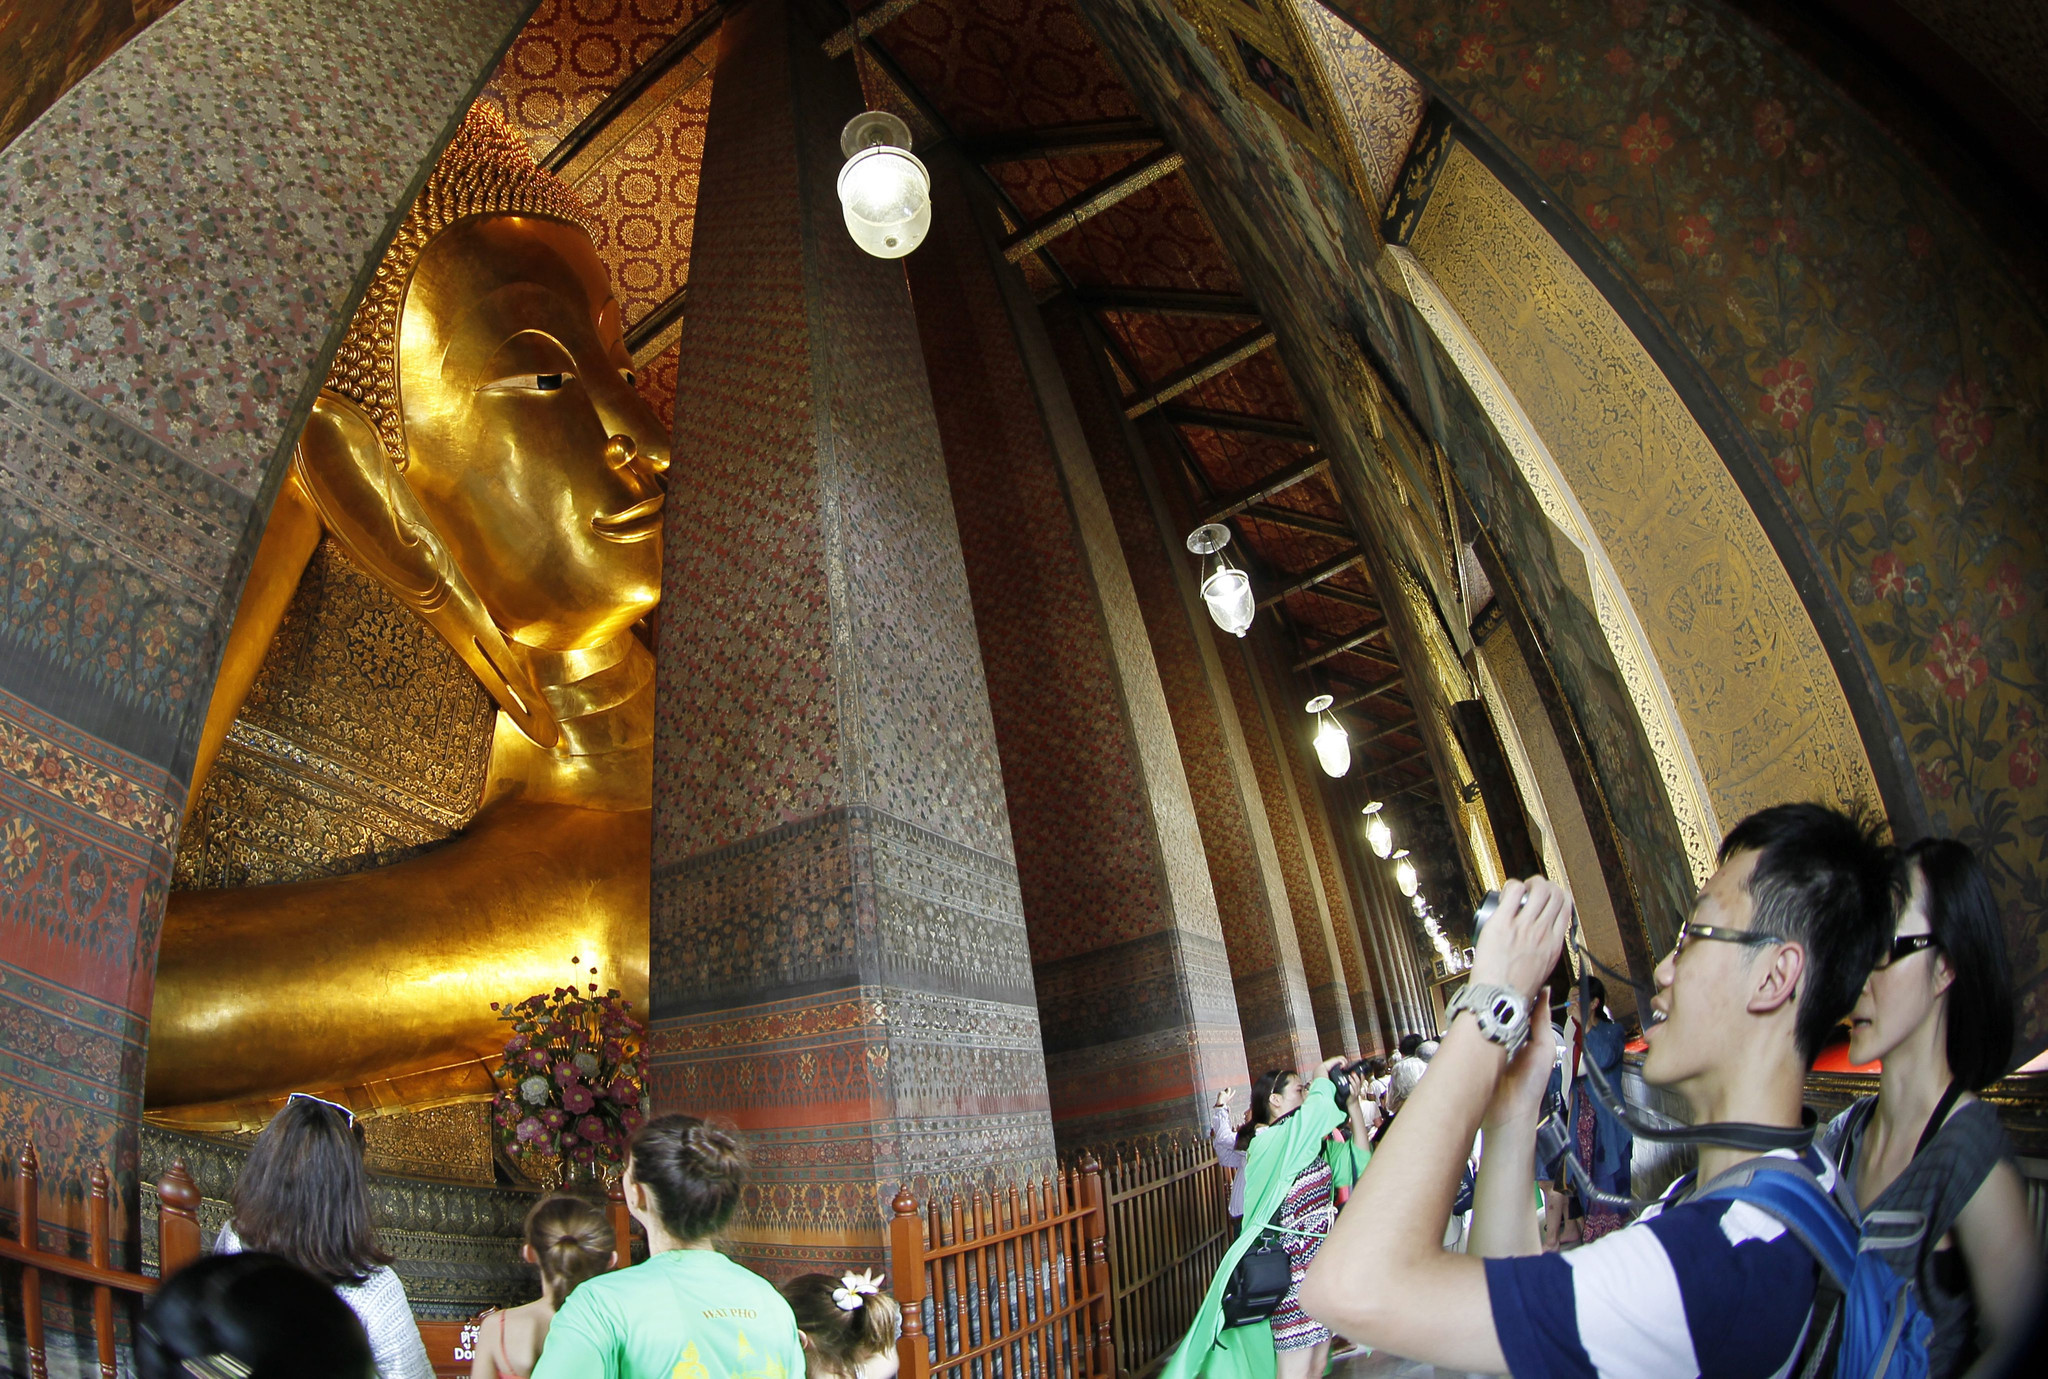 盘点中国游客足迹遍布泰国 被指失礼遭发文明